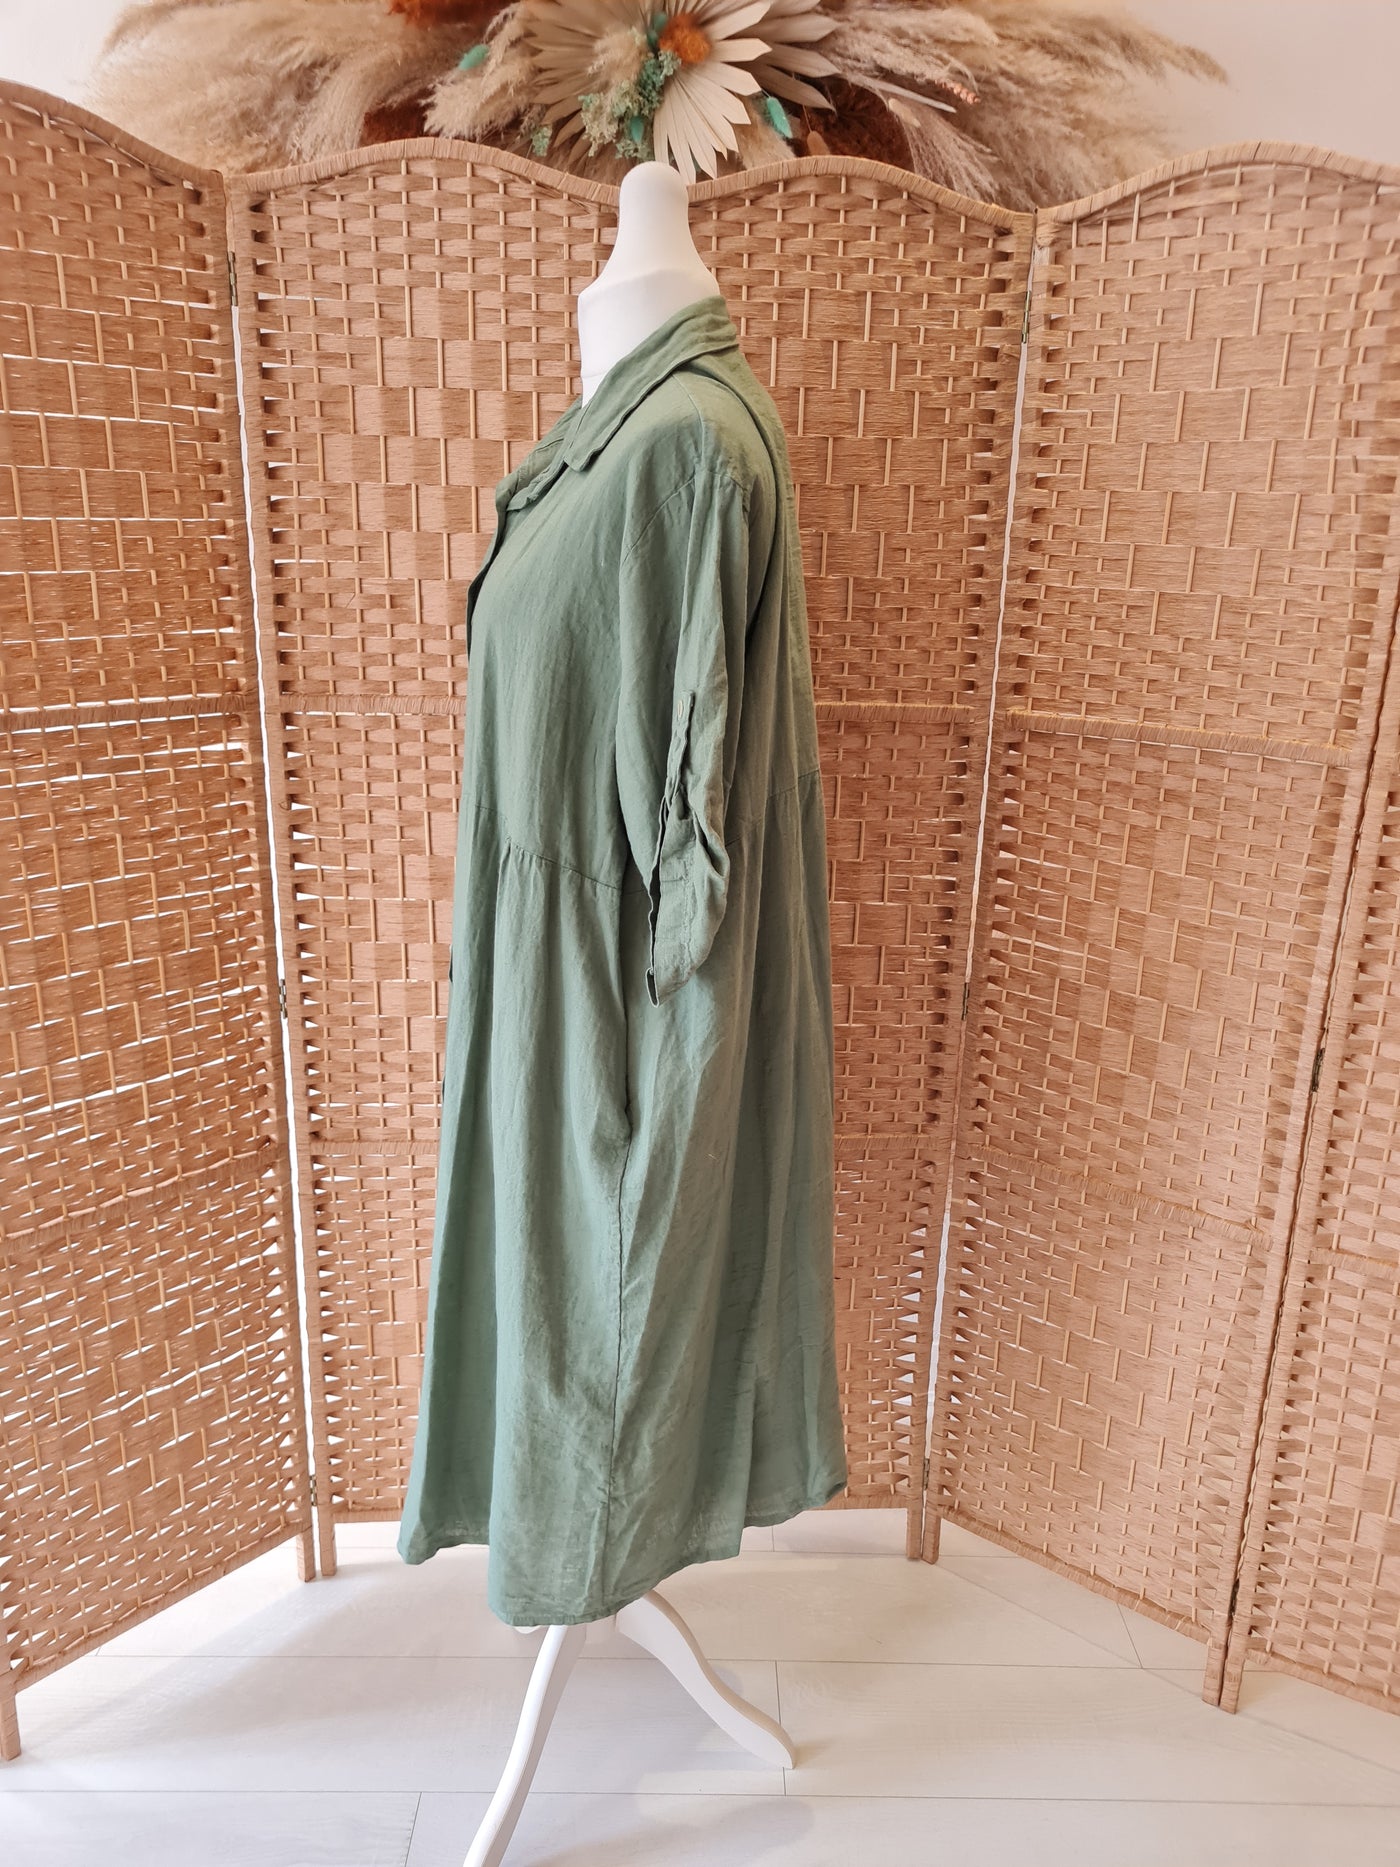 Hax Lux Lori Linen / Cotton dress in Khaki